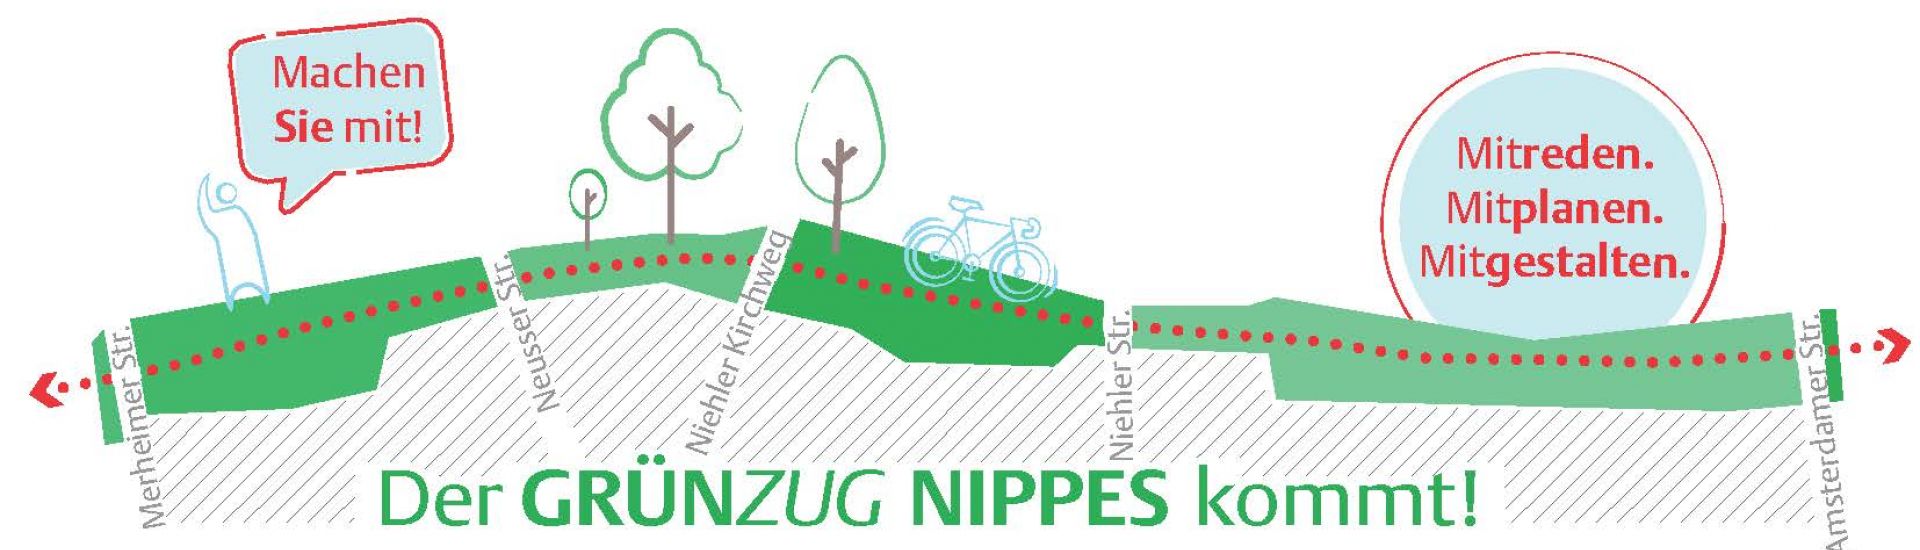 Dargestellt wird das Logo des Grünzugs Nippes mit einem Schriftzug sowie Bäumen und einem Radweg.